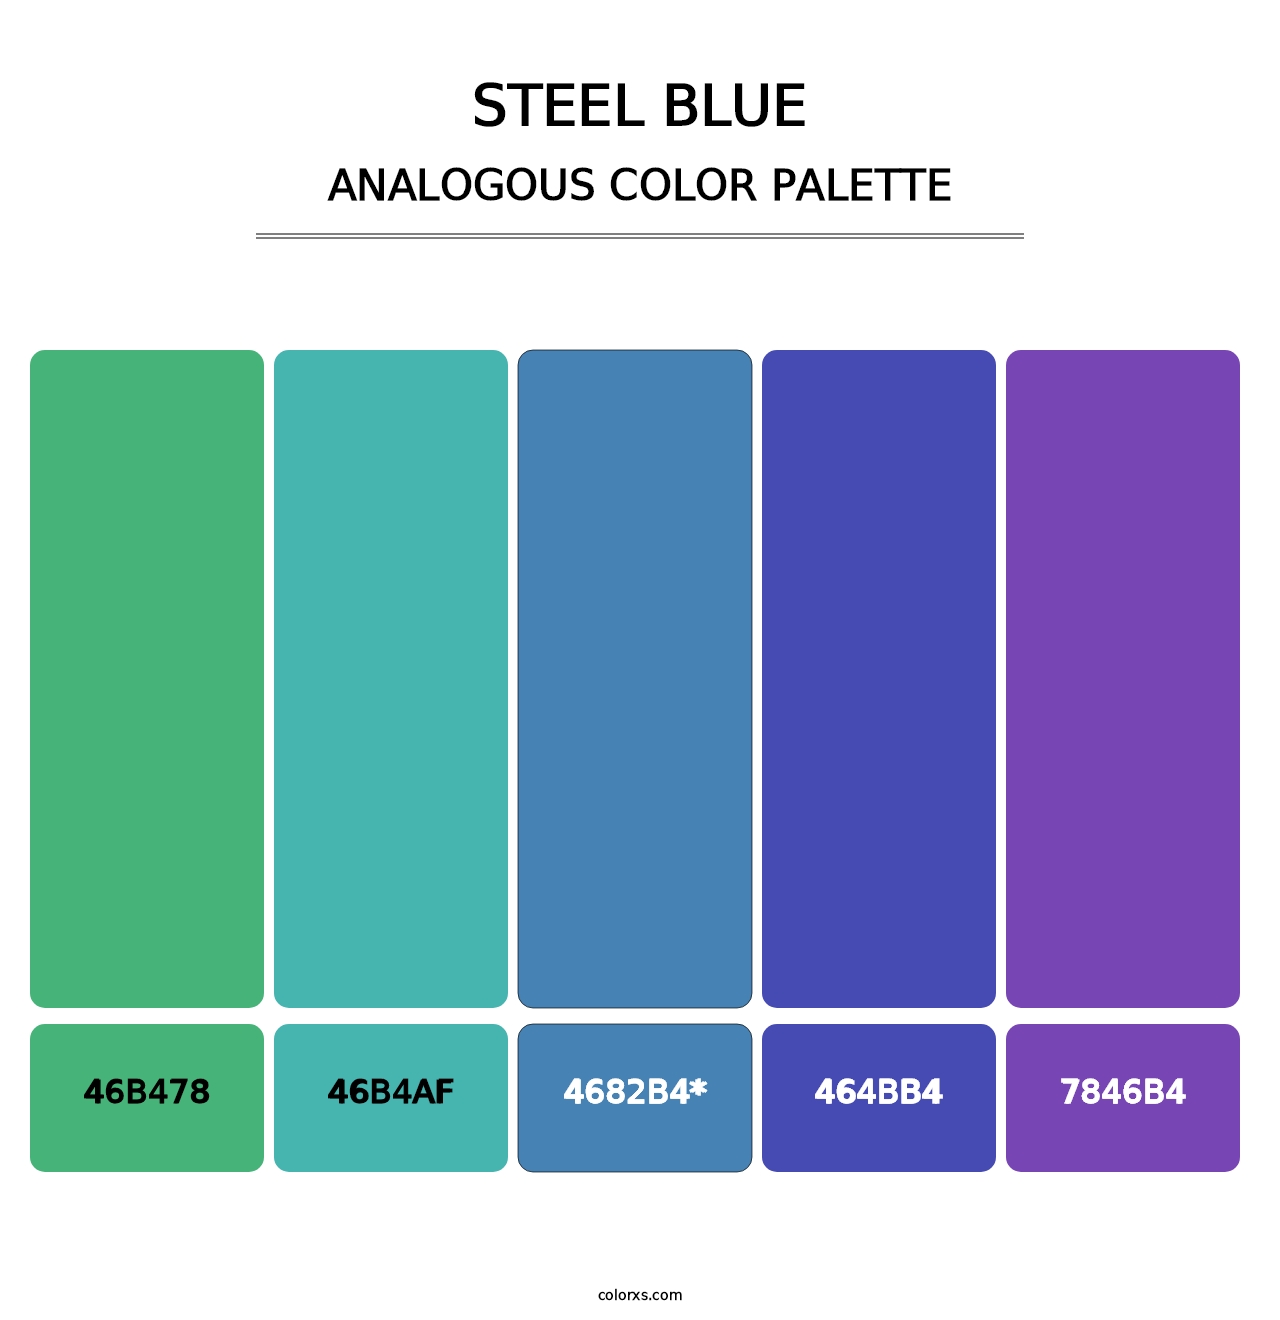 Steel Blue - Analogous Color Palette